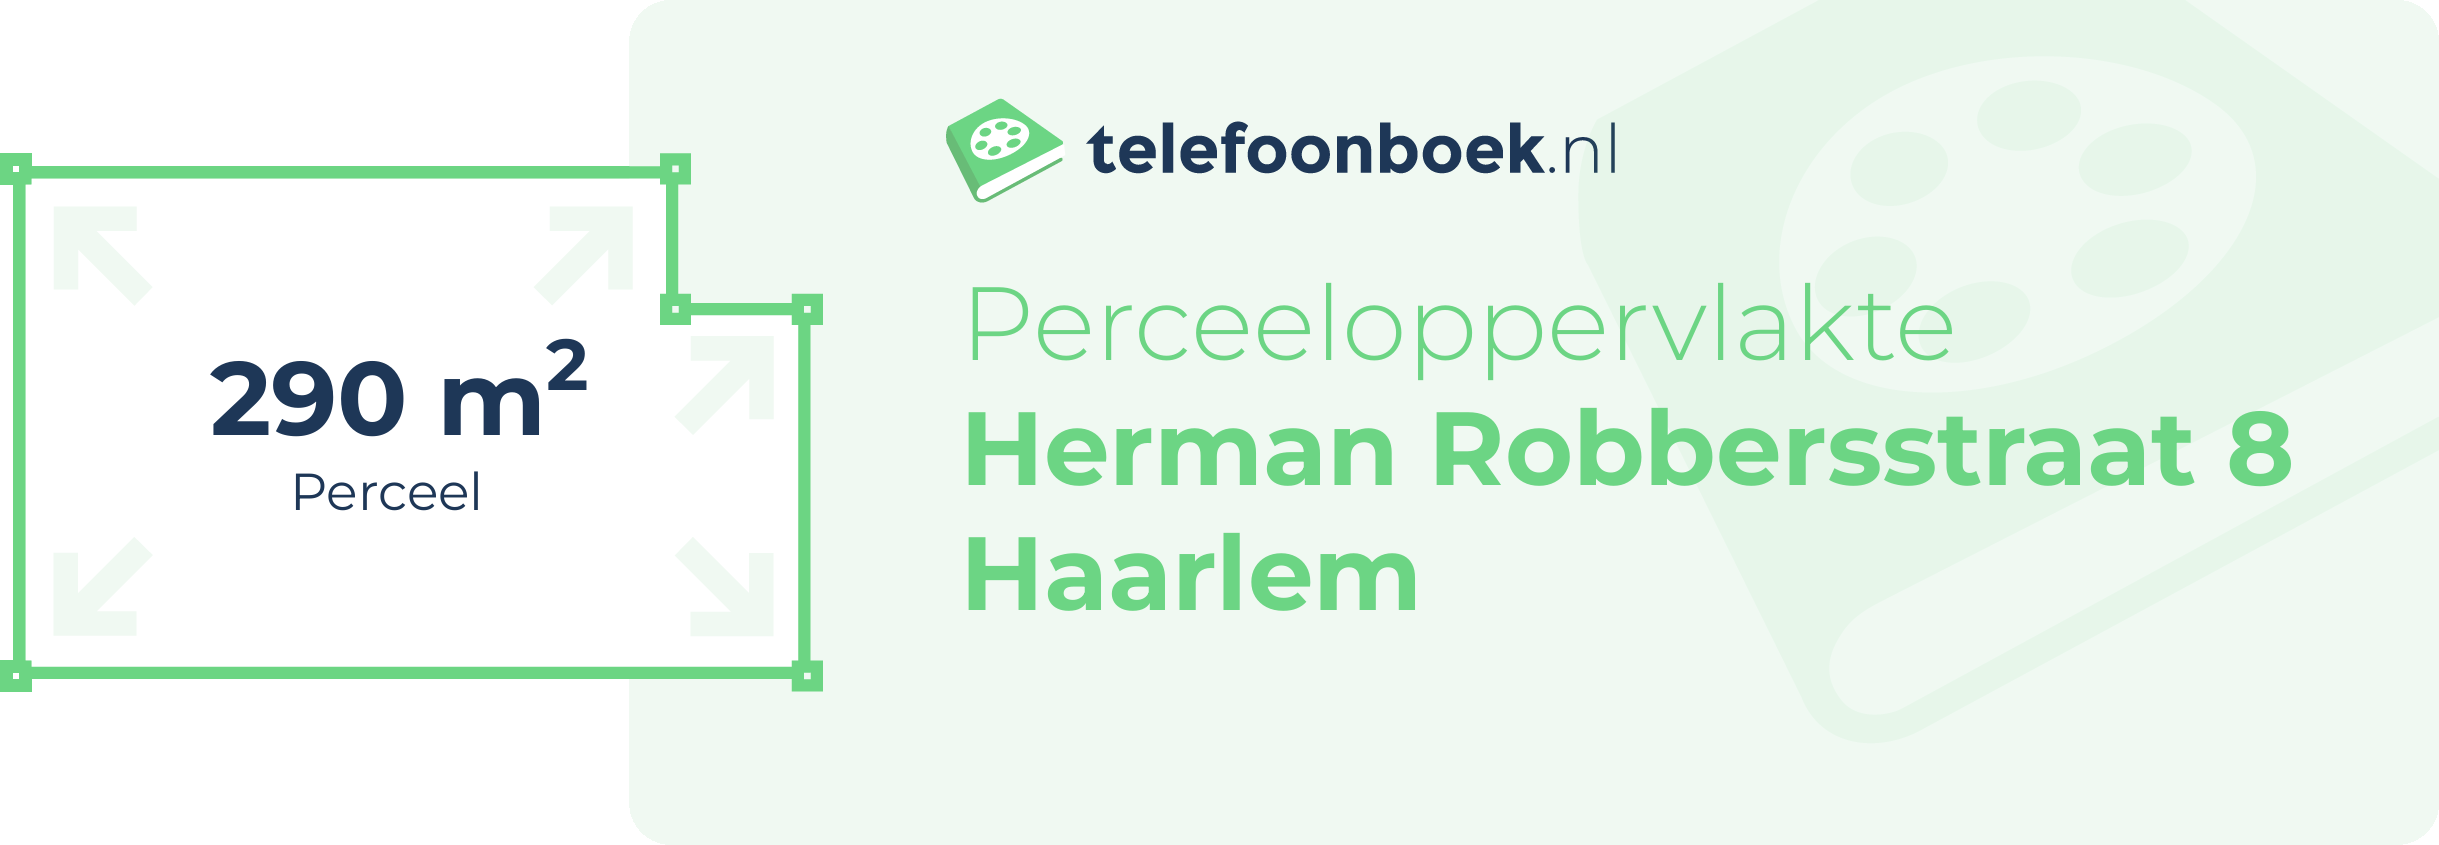 Perceeloppervlakte Herman Robbersstraat 8 Haarlem